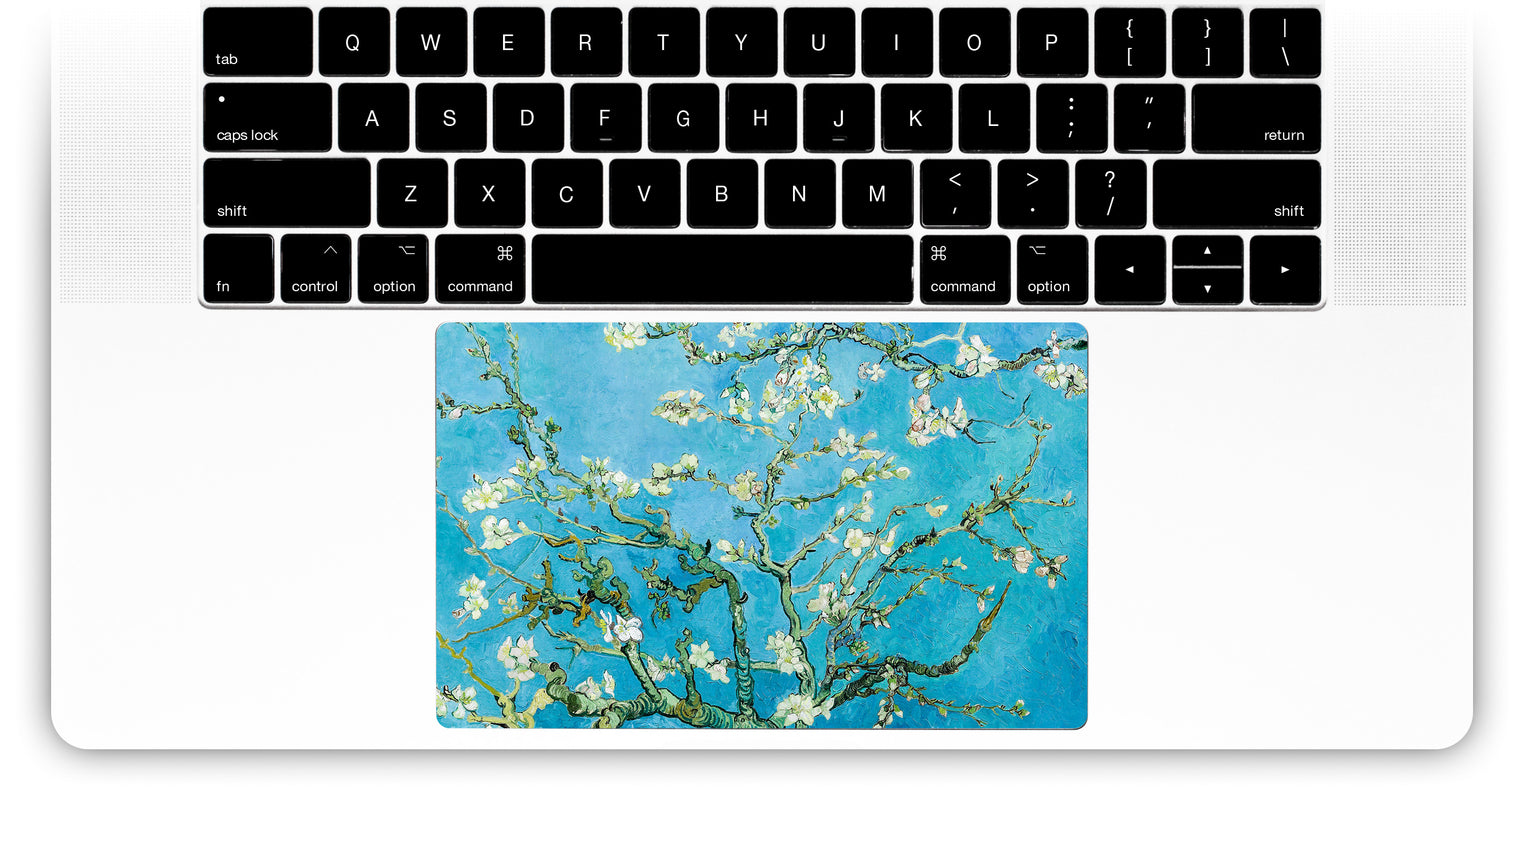 Fleur D'Amande par van Gogh Sticker Pour Trackpad Mac